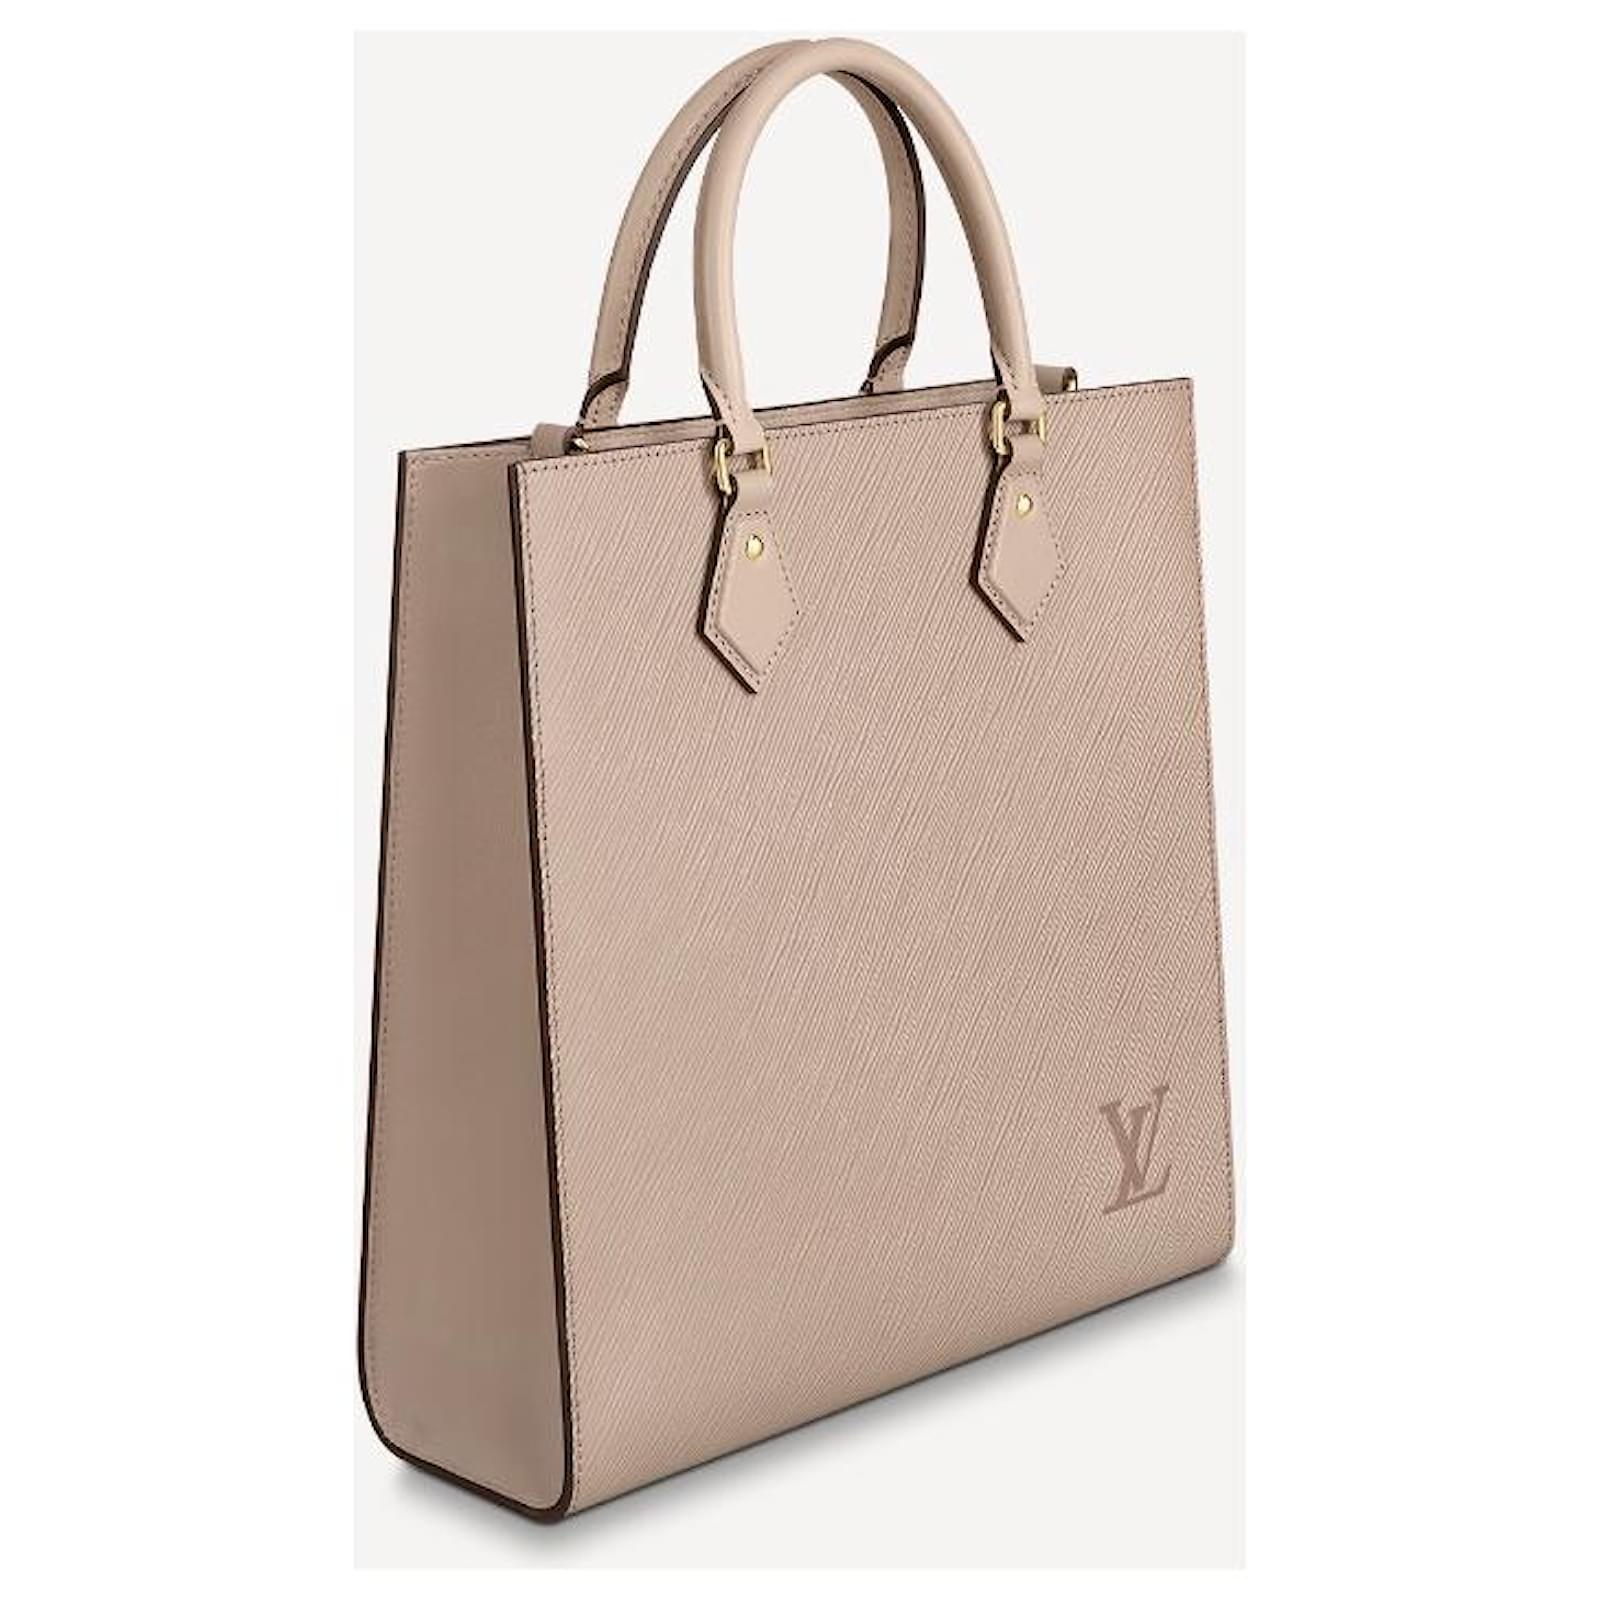 Louis Vuitton Epi Sac Plat Pm Tote Bag